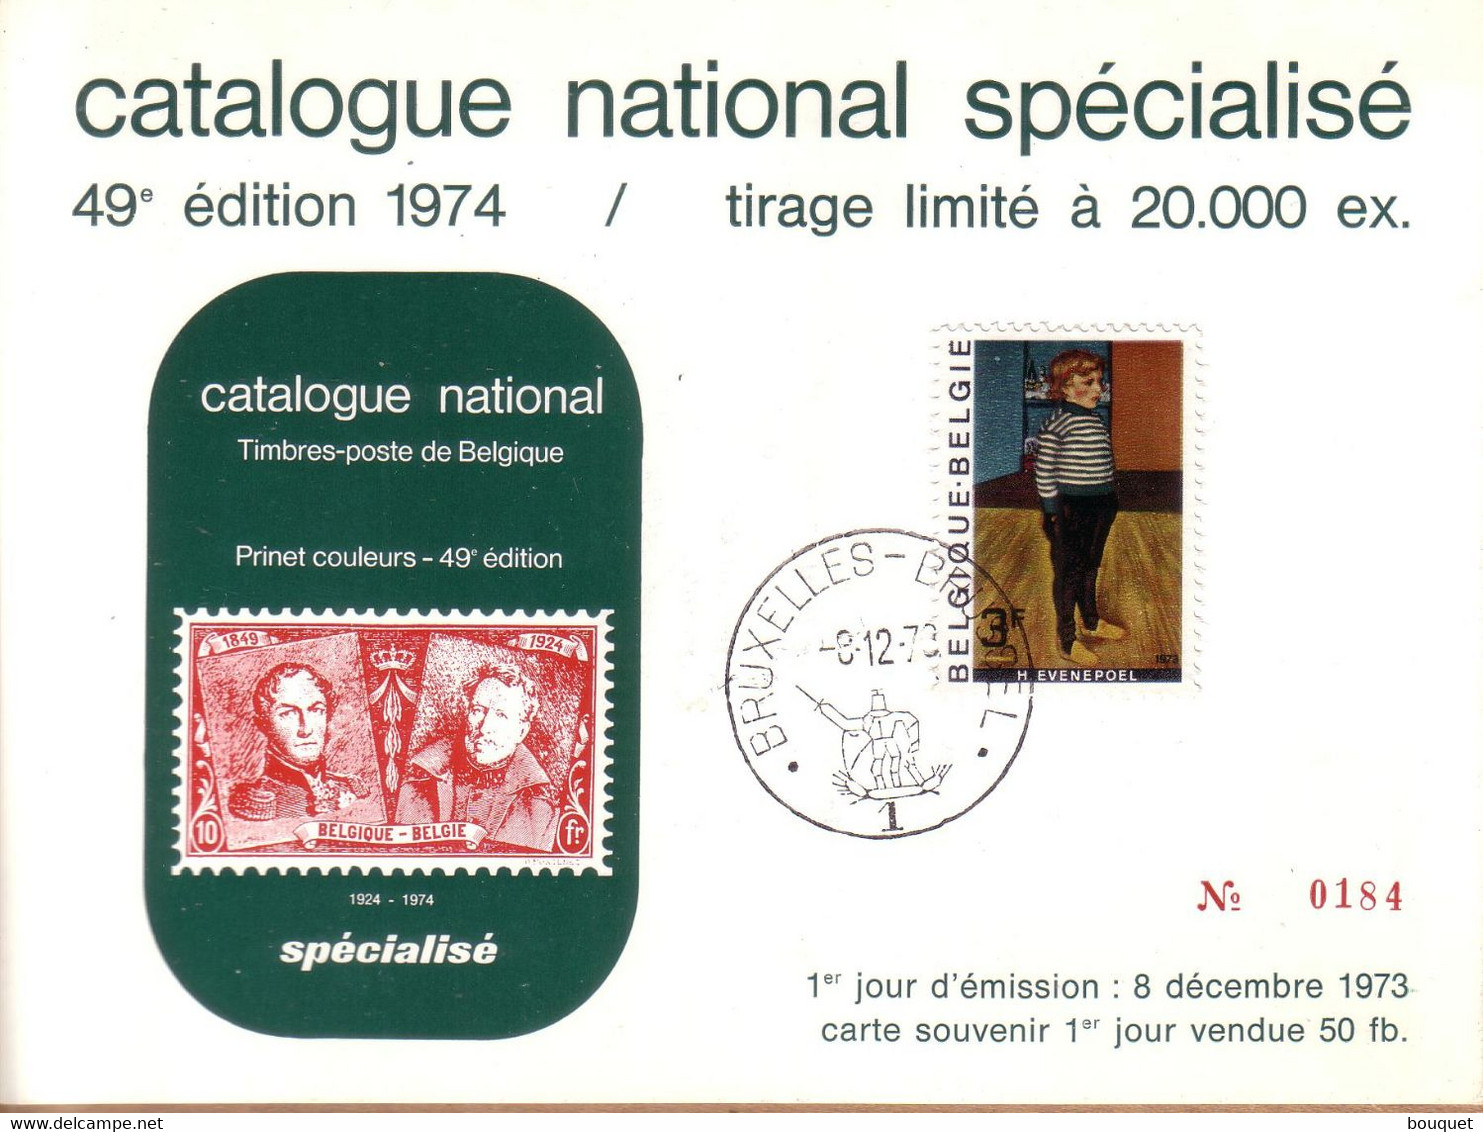 BELGIQUE - CARTE SOUVENIR CATALOGUE NATIONAL BRUXELLES , 1ER JOUR 8 DECEMBRE 1973 , 3 F H. EVENEPOEL - Souvenir Cards - Joint Issues [HK]